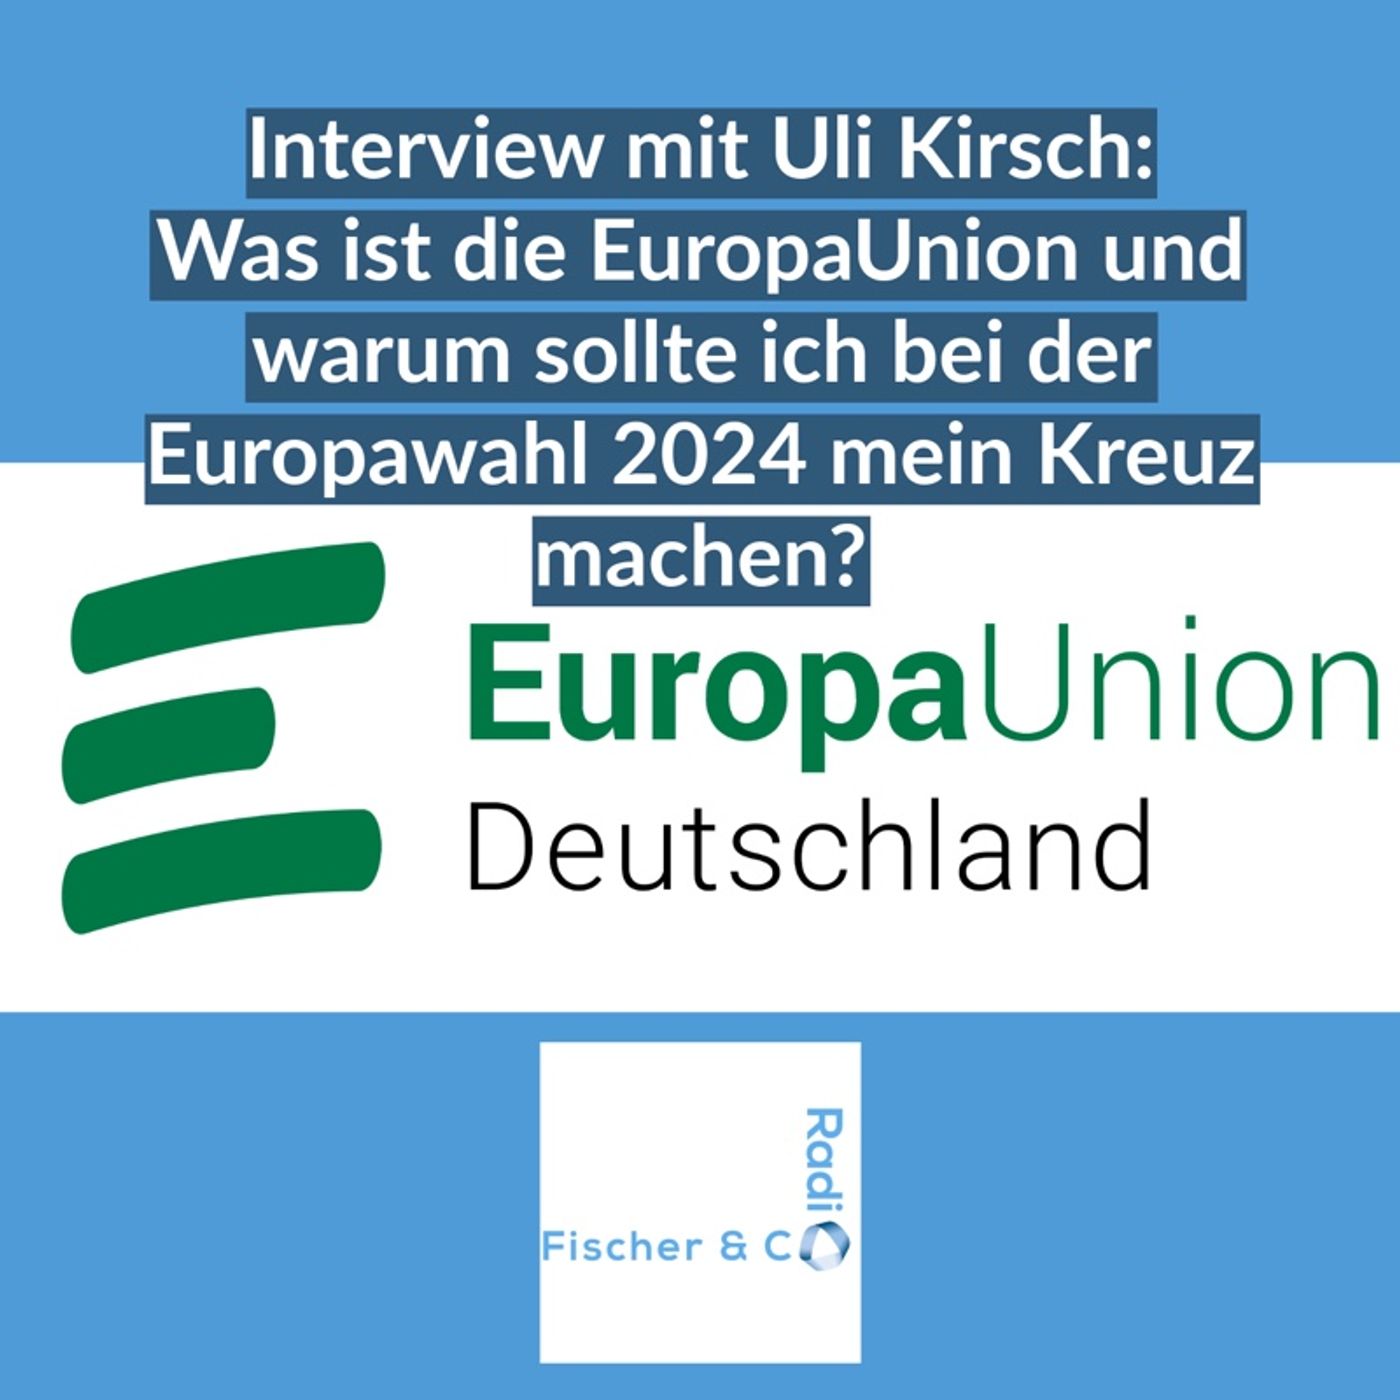 Europawahl 2024: Interview mit Uli Kirsch von der EuropaUnion